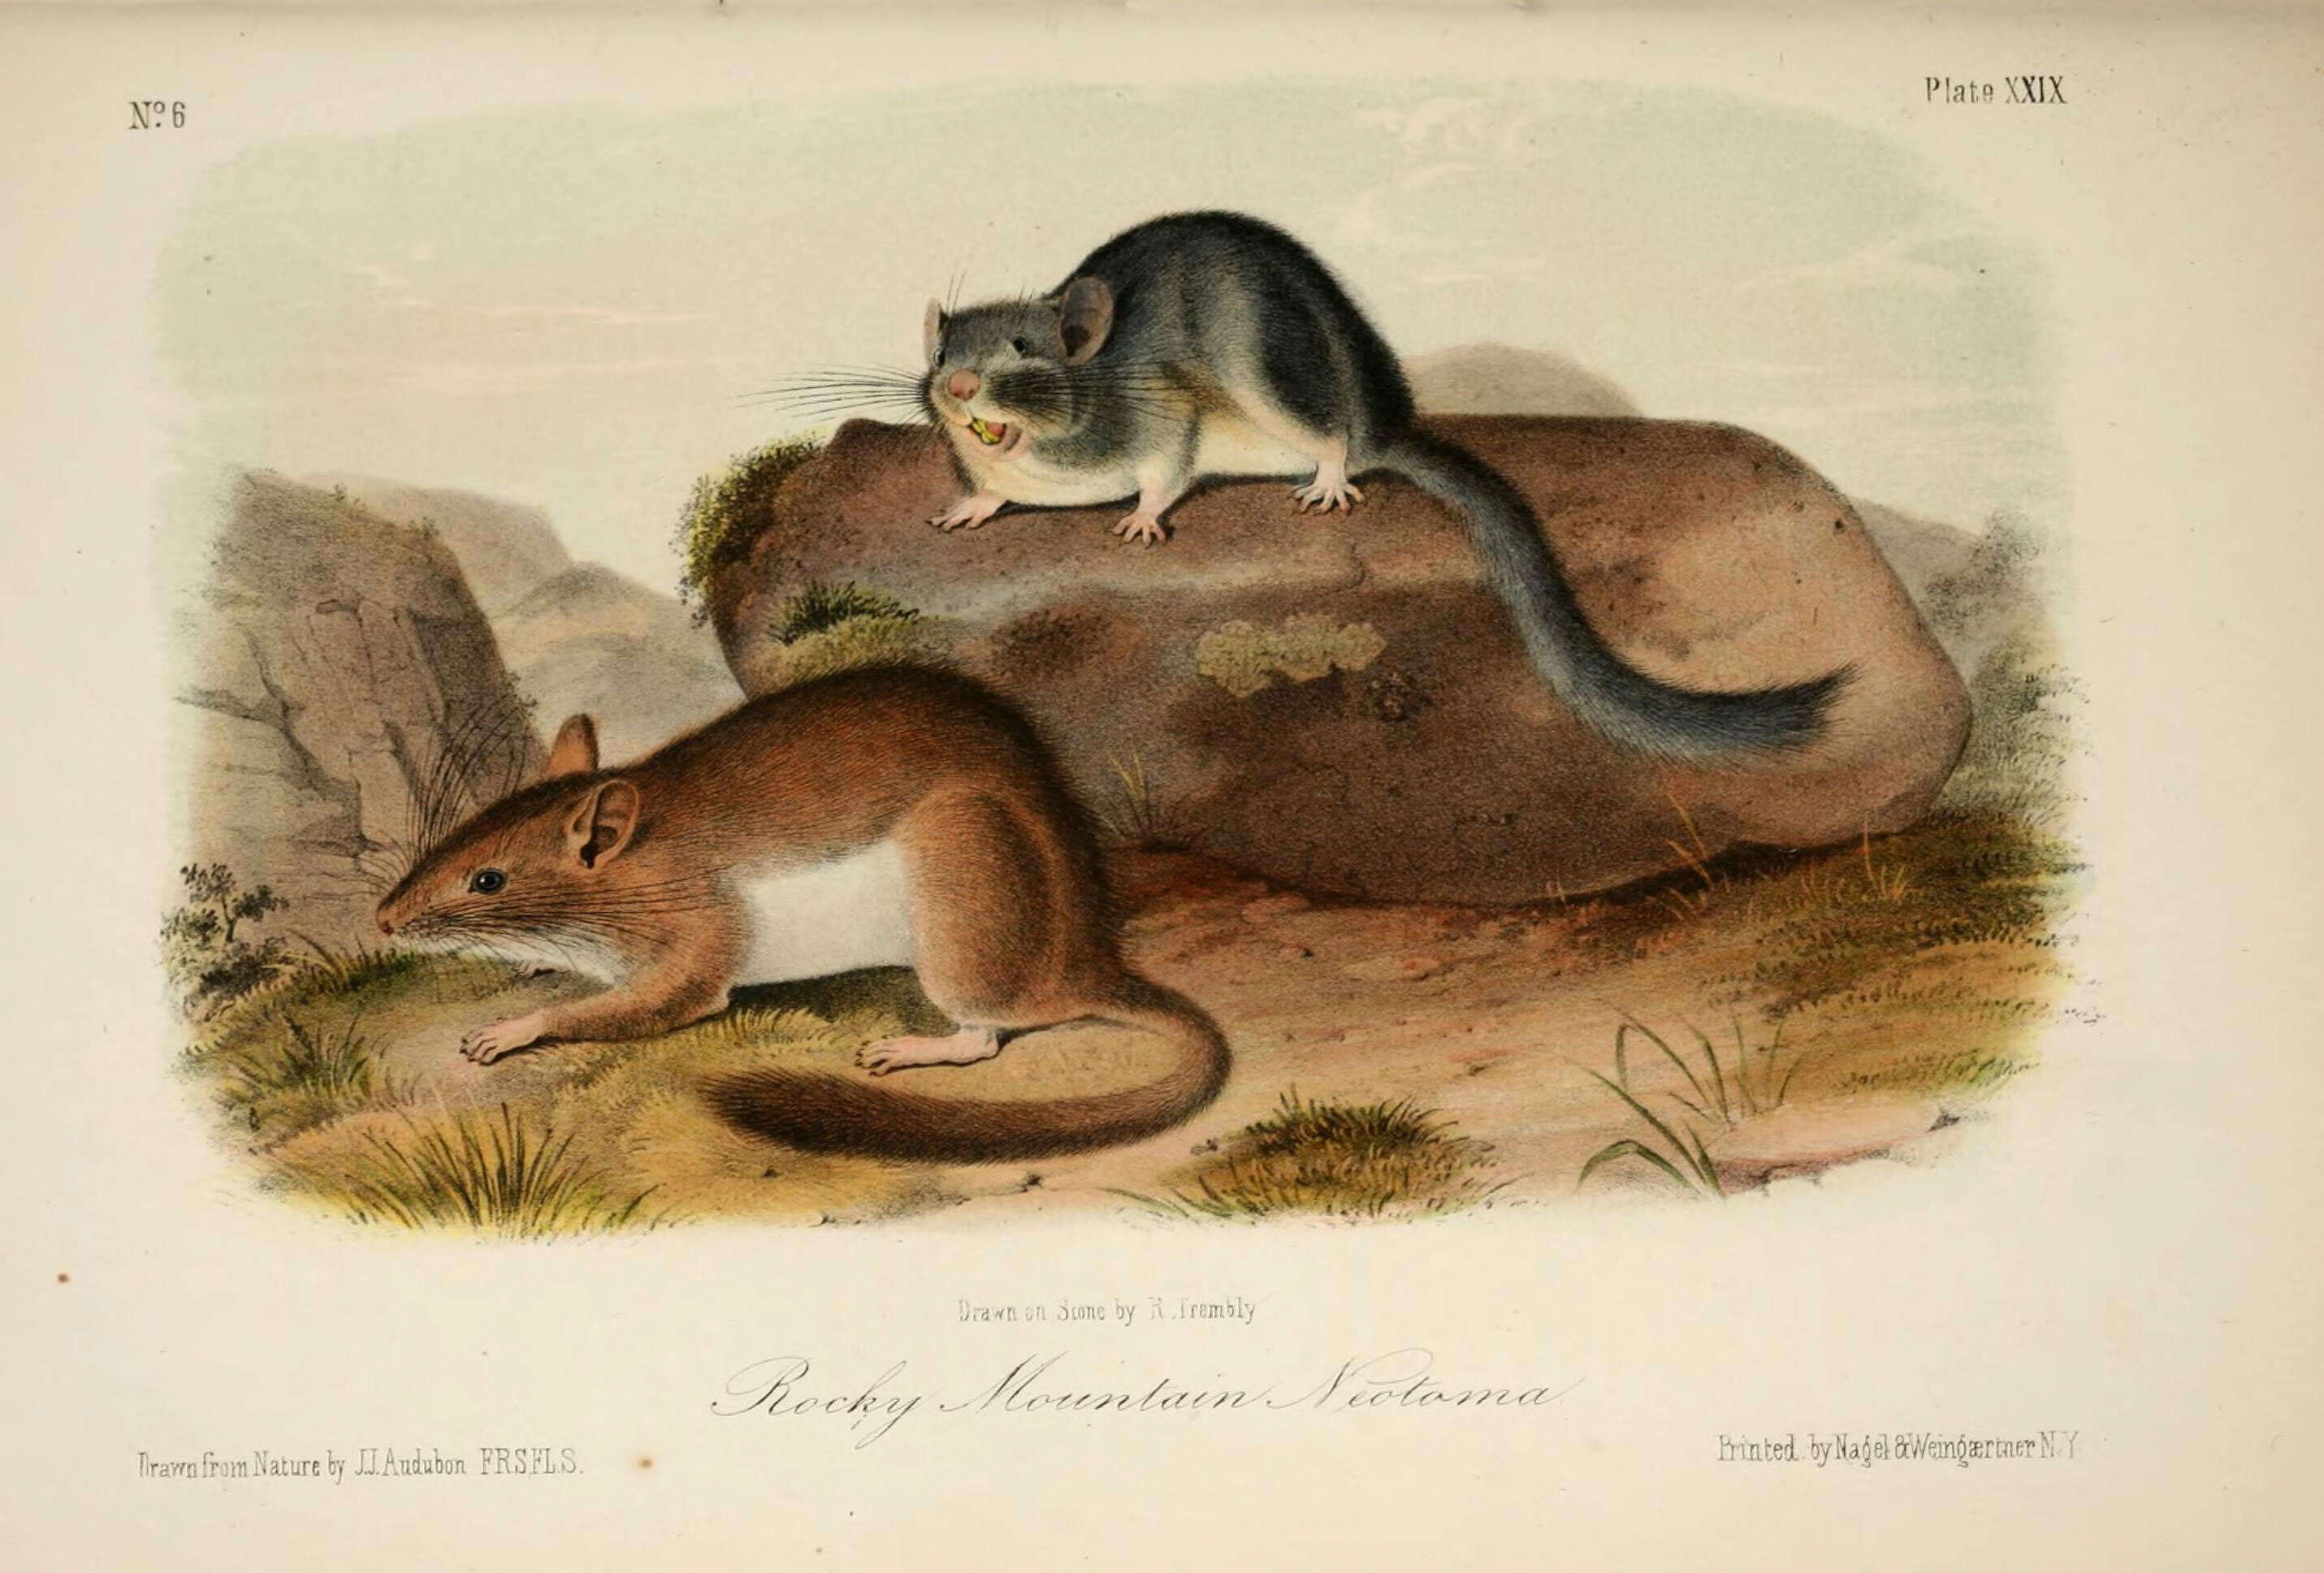 Image of Neotoma subgen. Teonoma Gray 1843